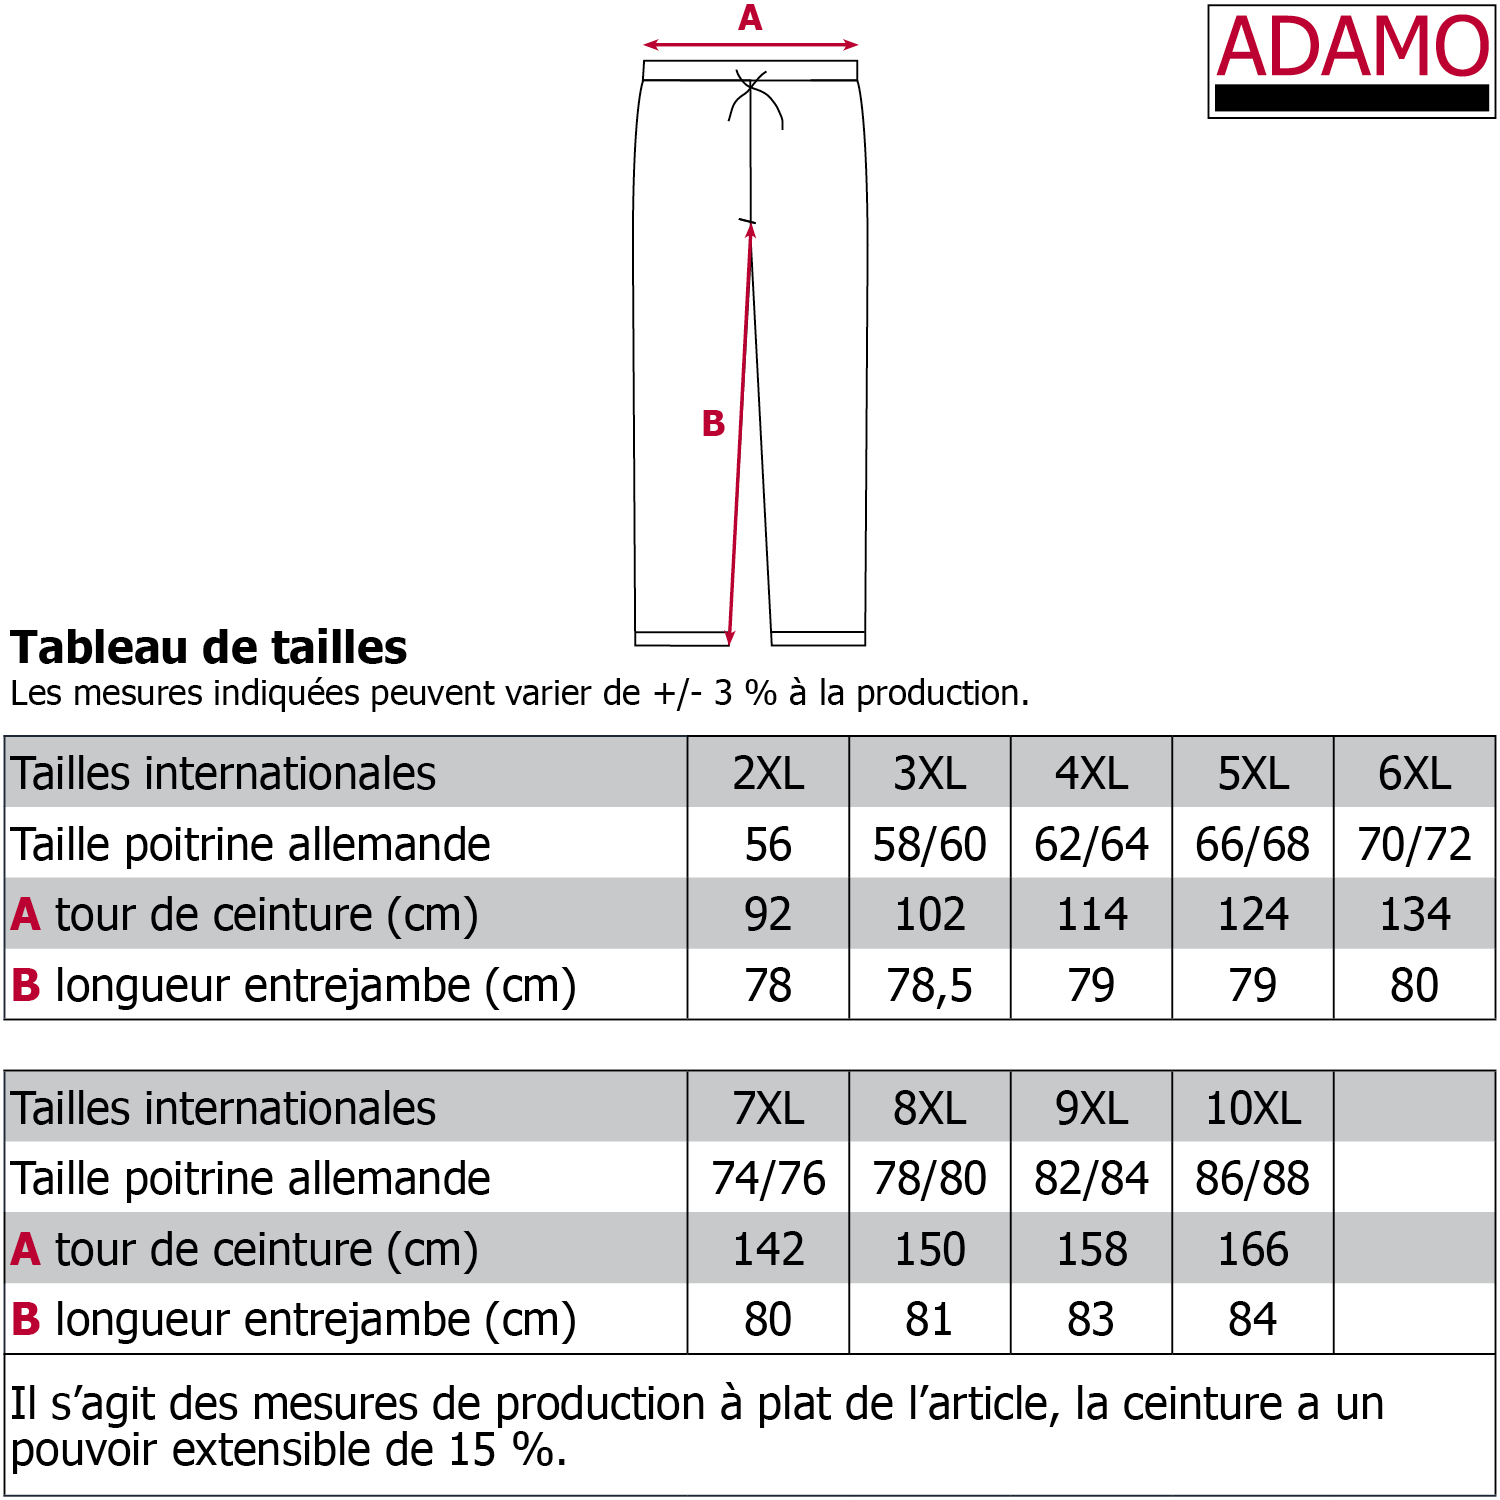 Lange Schlafhose von ADAMO in großen Größen bis 10XL